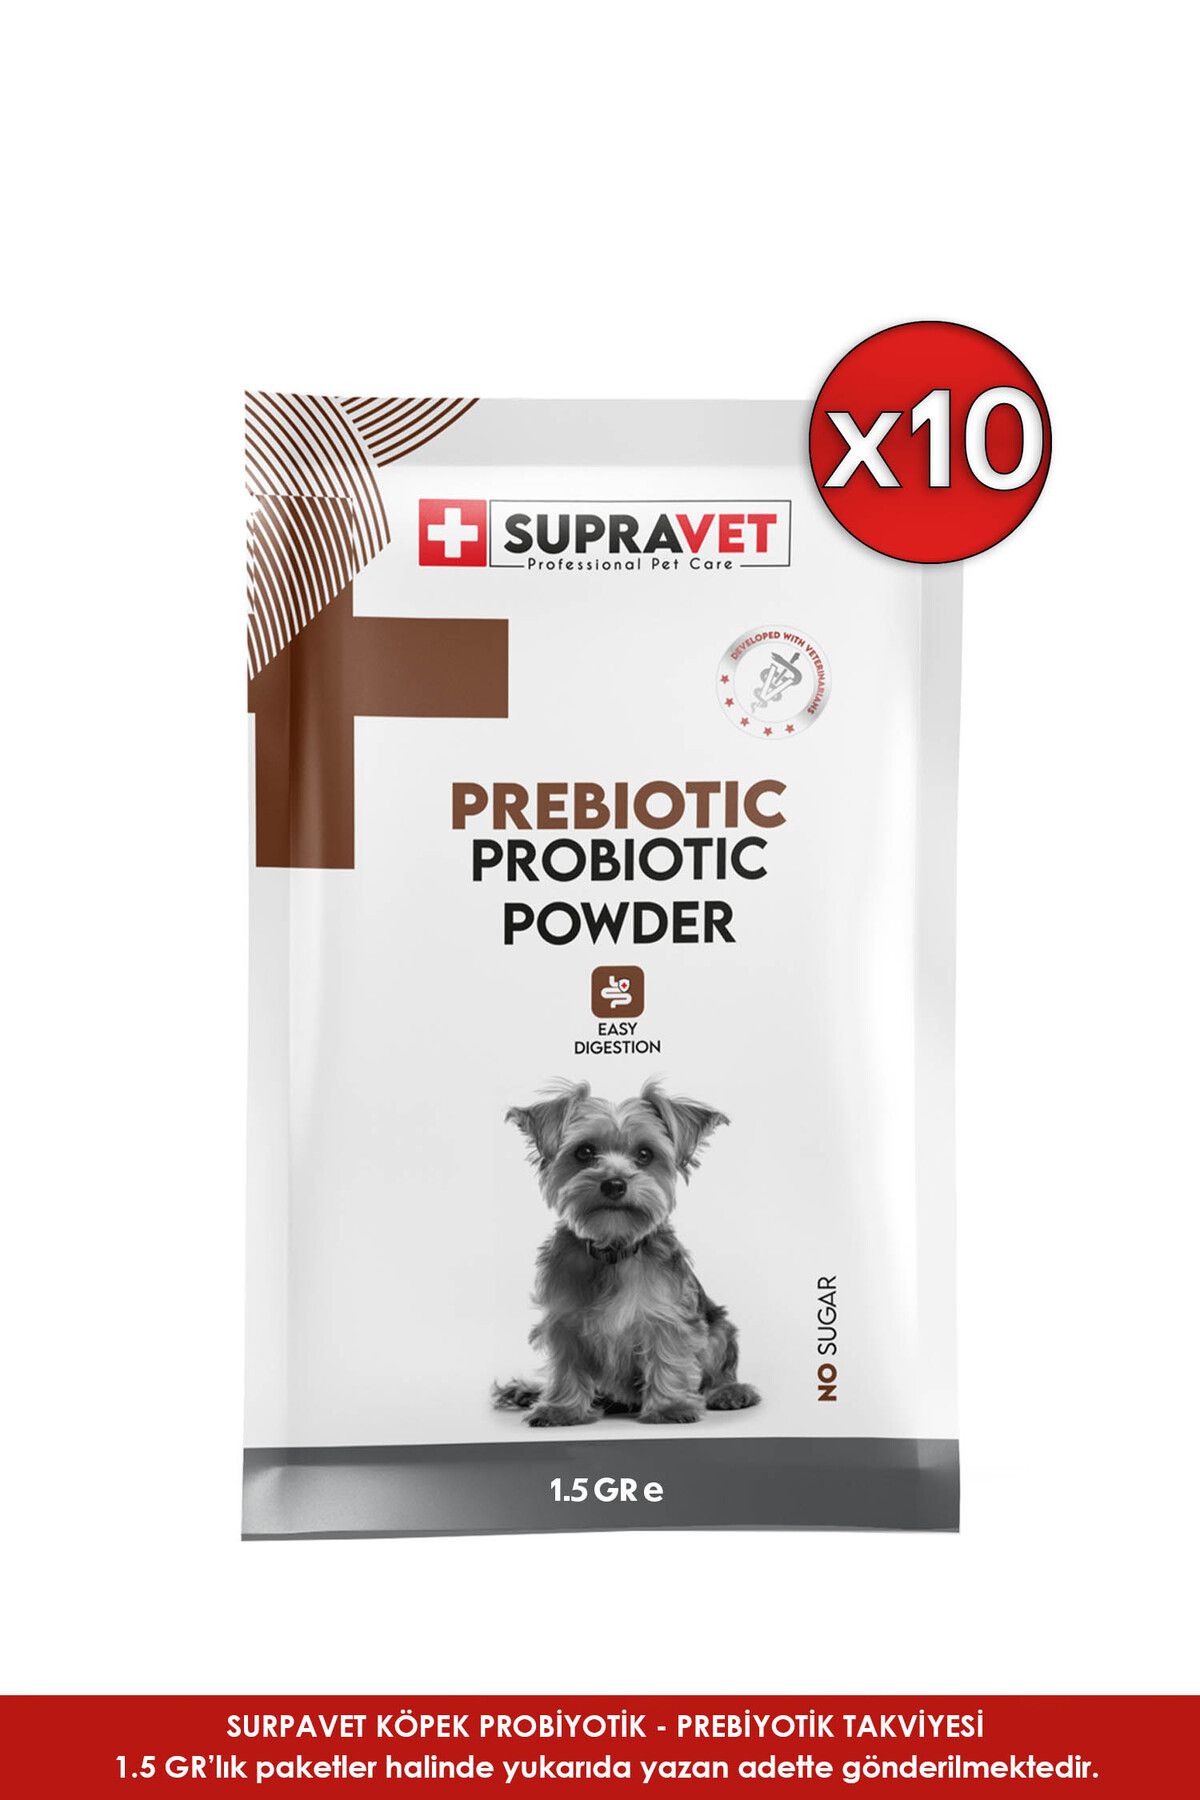 Supravet Probiyotik, Kedi Bağışıklık Güçlendirici Toz Probiyotik+Prebiyotik Takviyesi 100 Ml - 10 LU